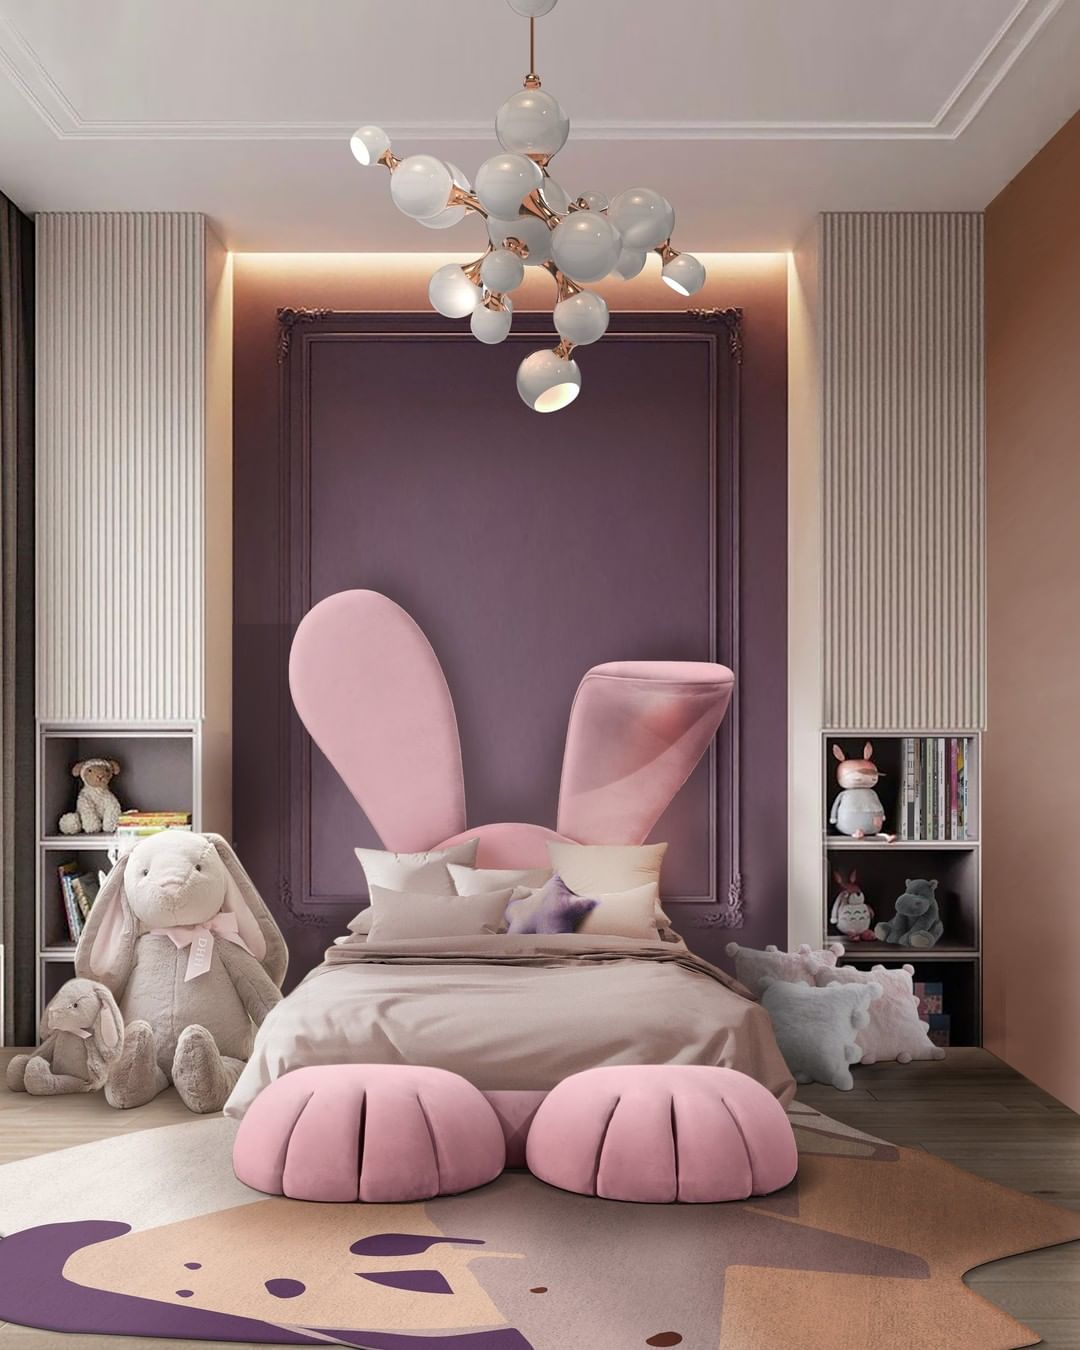 The Best Luxury Bedroom Décor